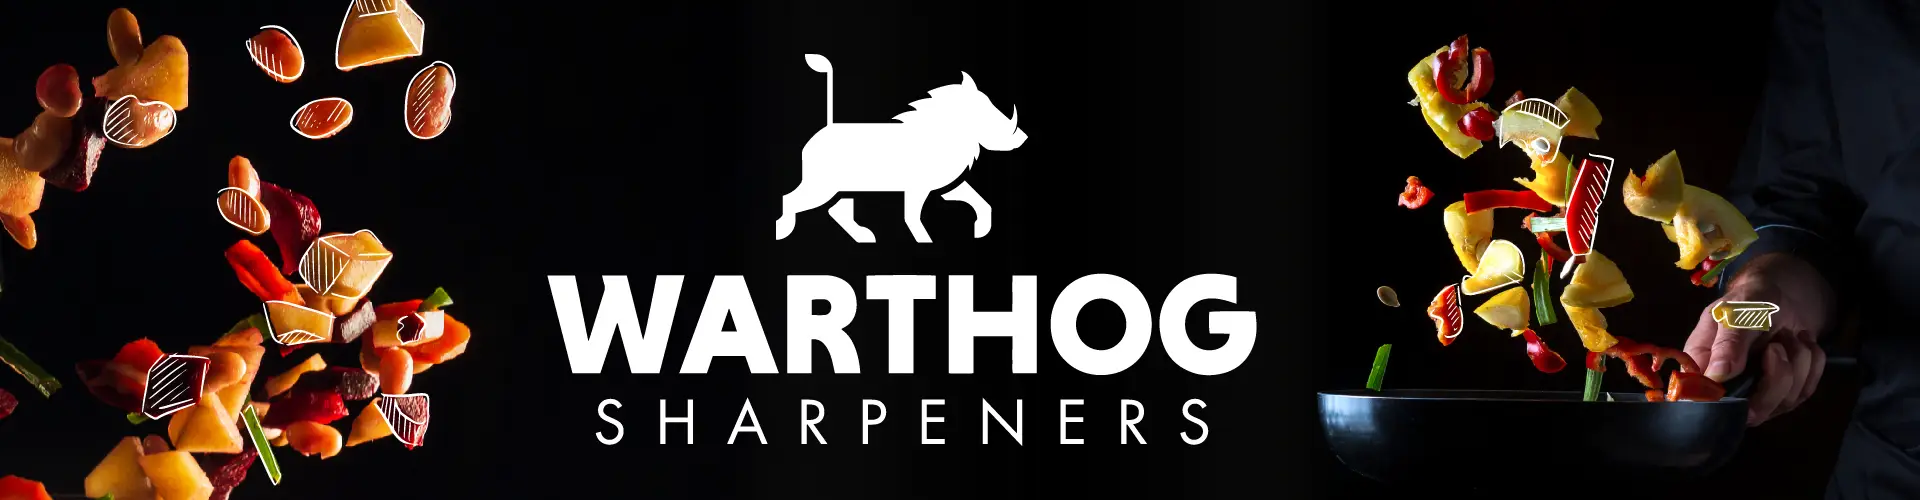 Warthog Sharpeners Classic II Messerschärfer - Schnelles und